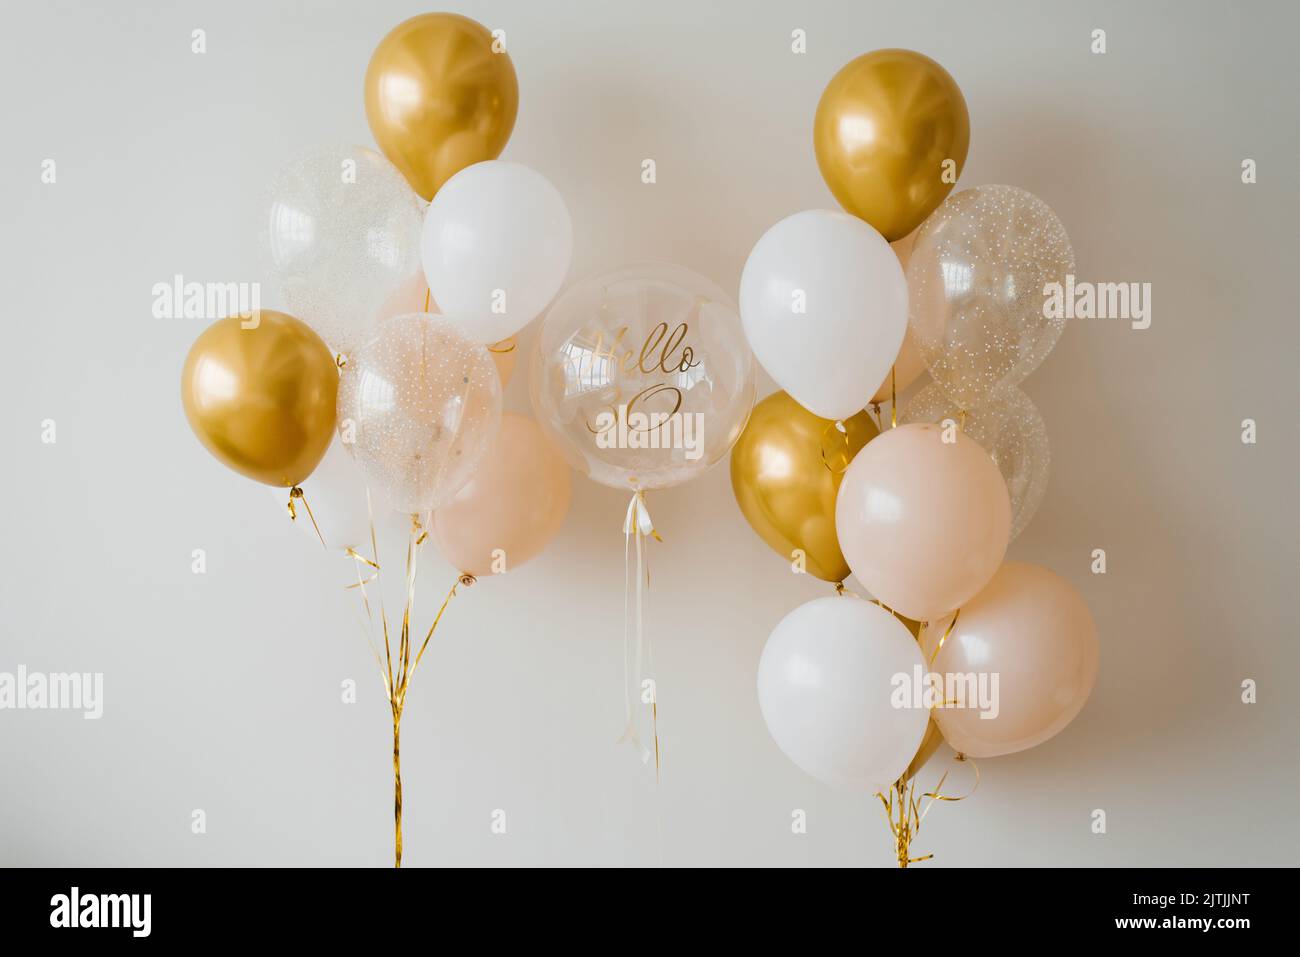 Globos festivos de helio en oro y blanco para el 30th aniversario Foto de stock